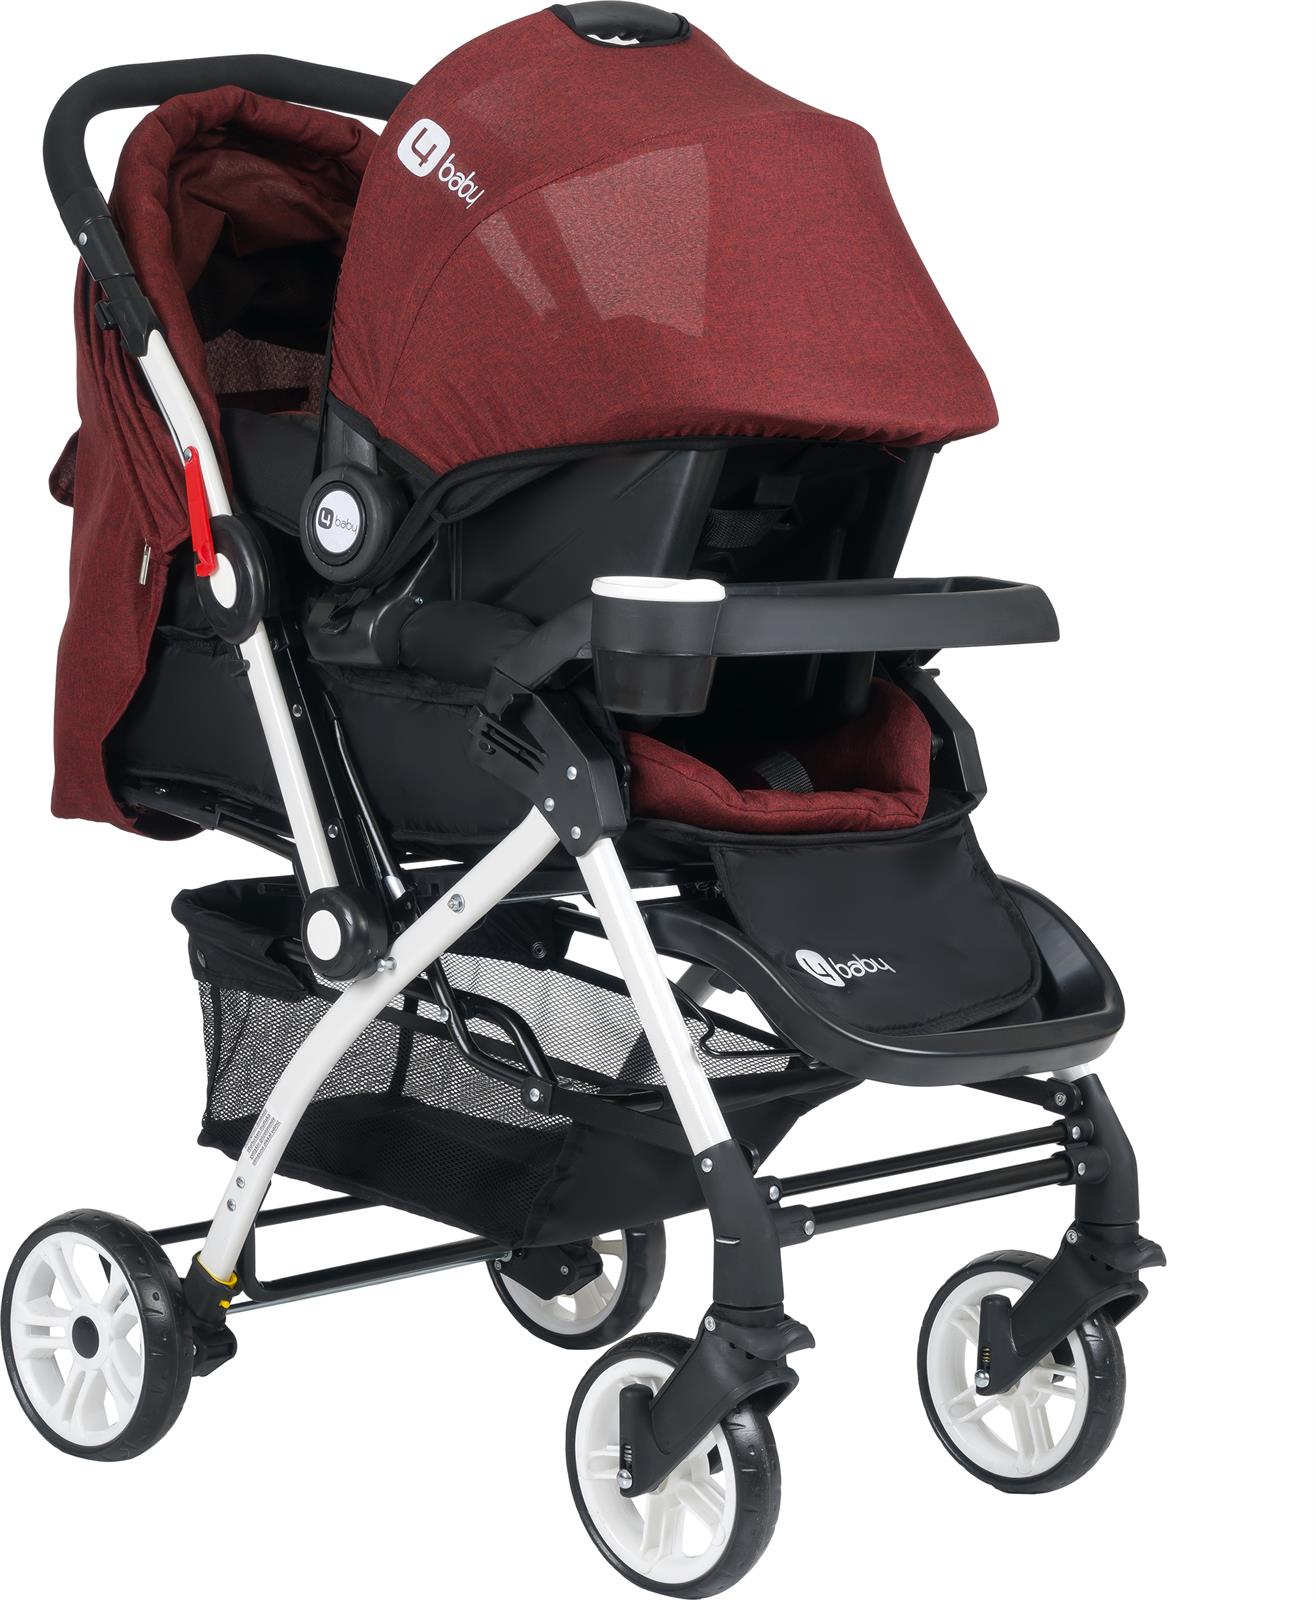 4 Baby Active Travel Sistem Bebek Arabası  Kahverengi